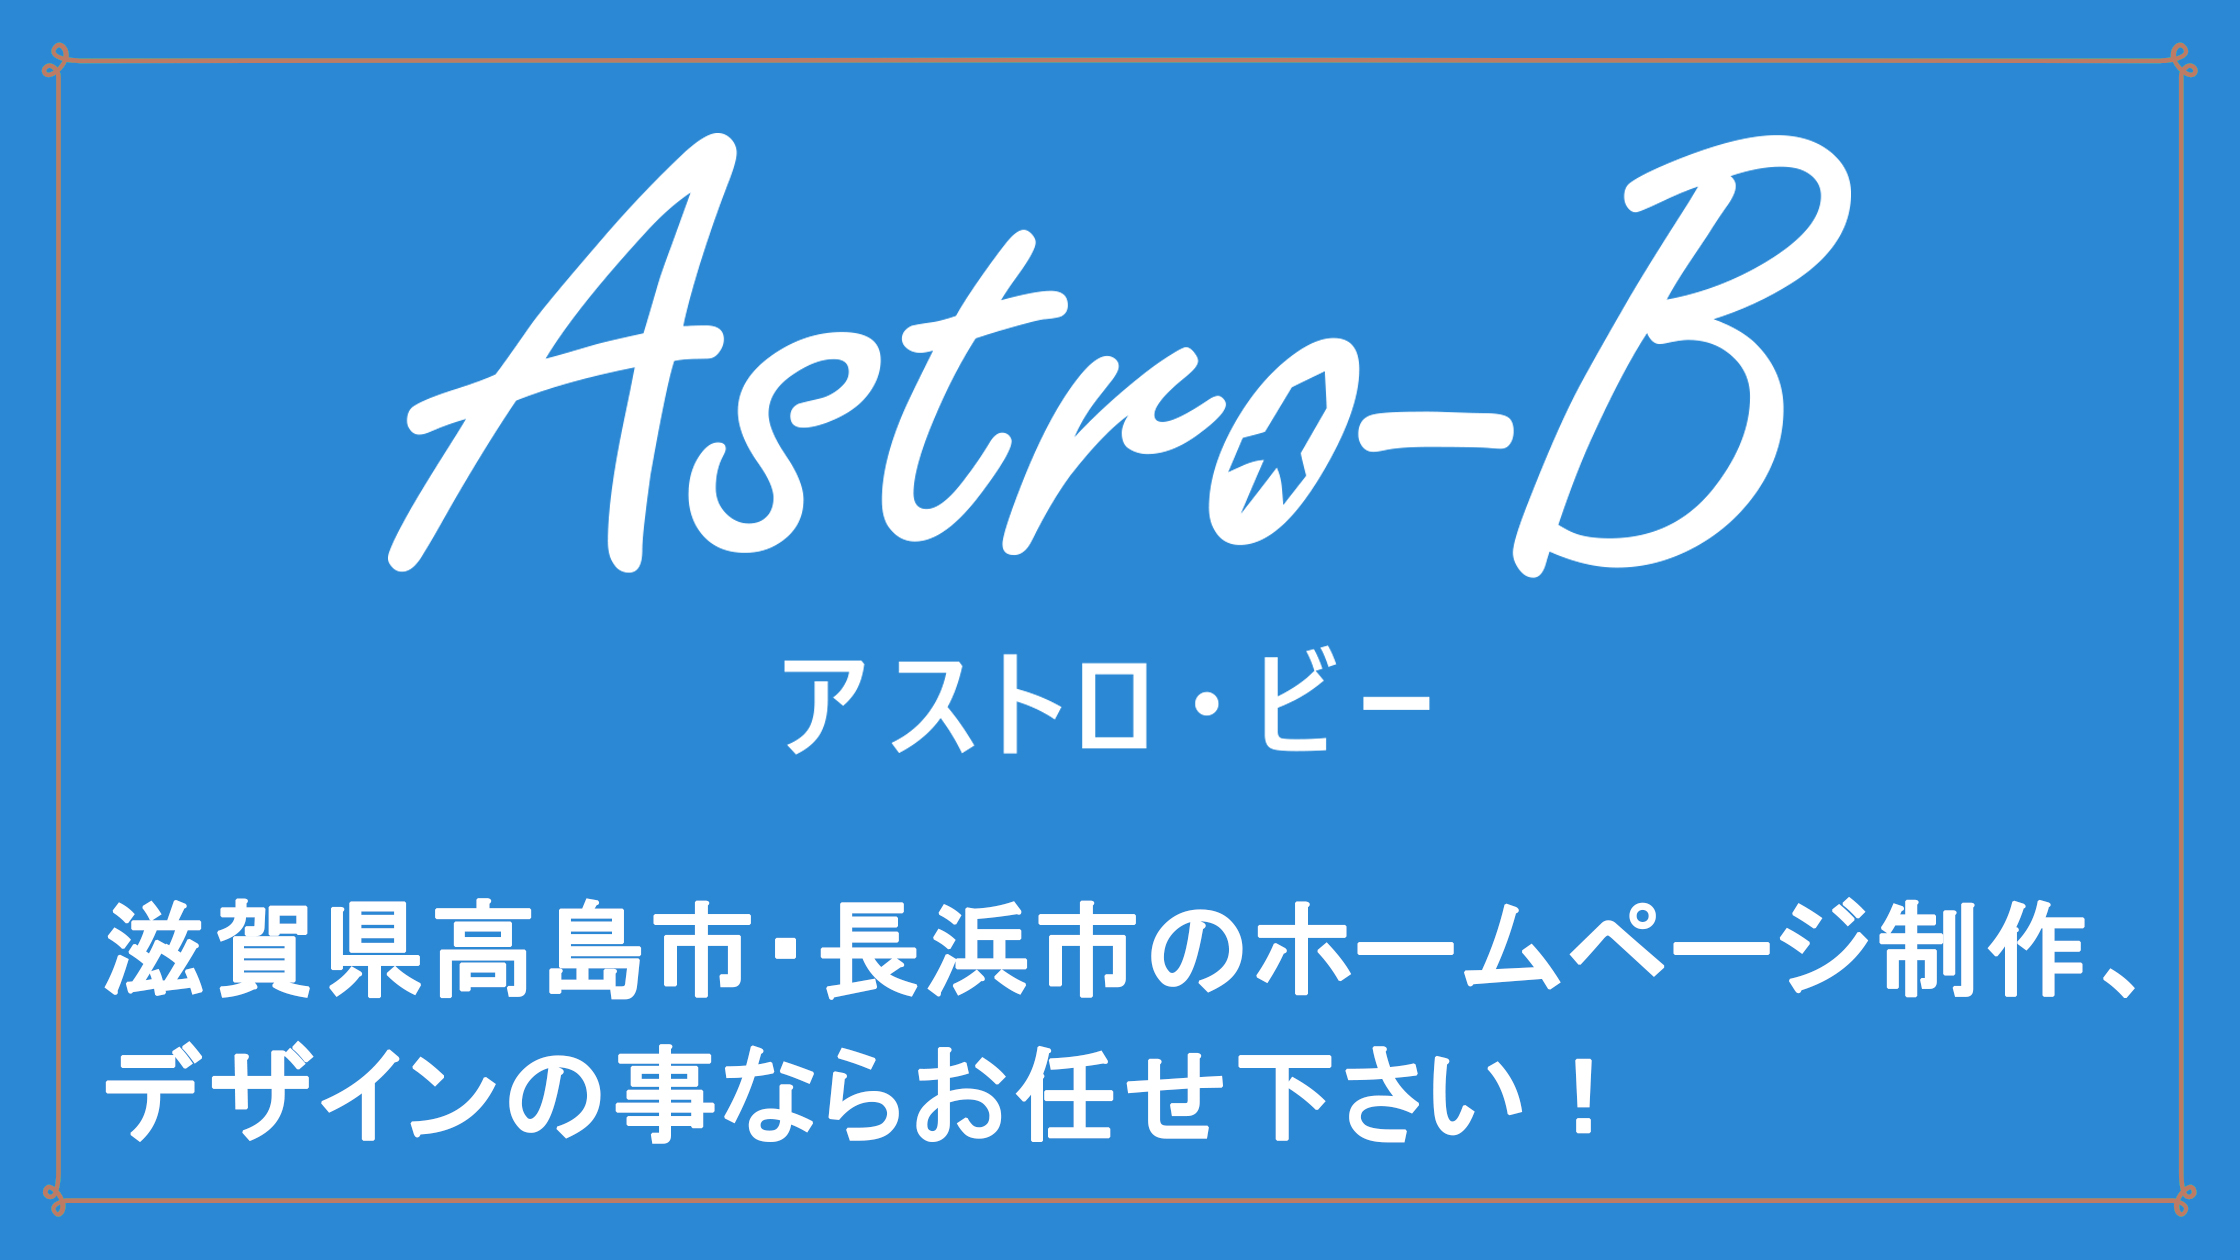 Astro-B